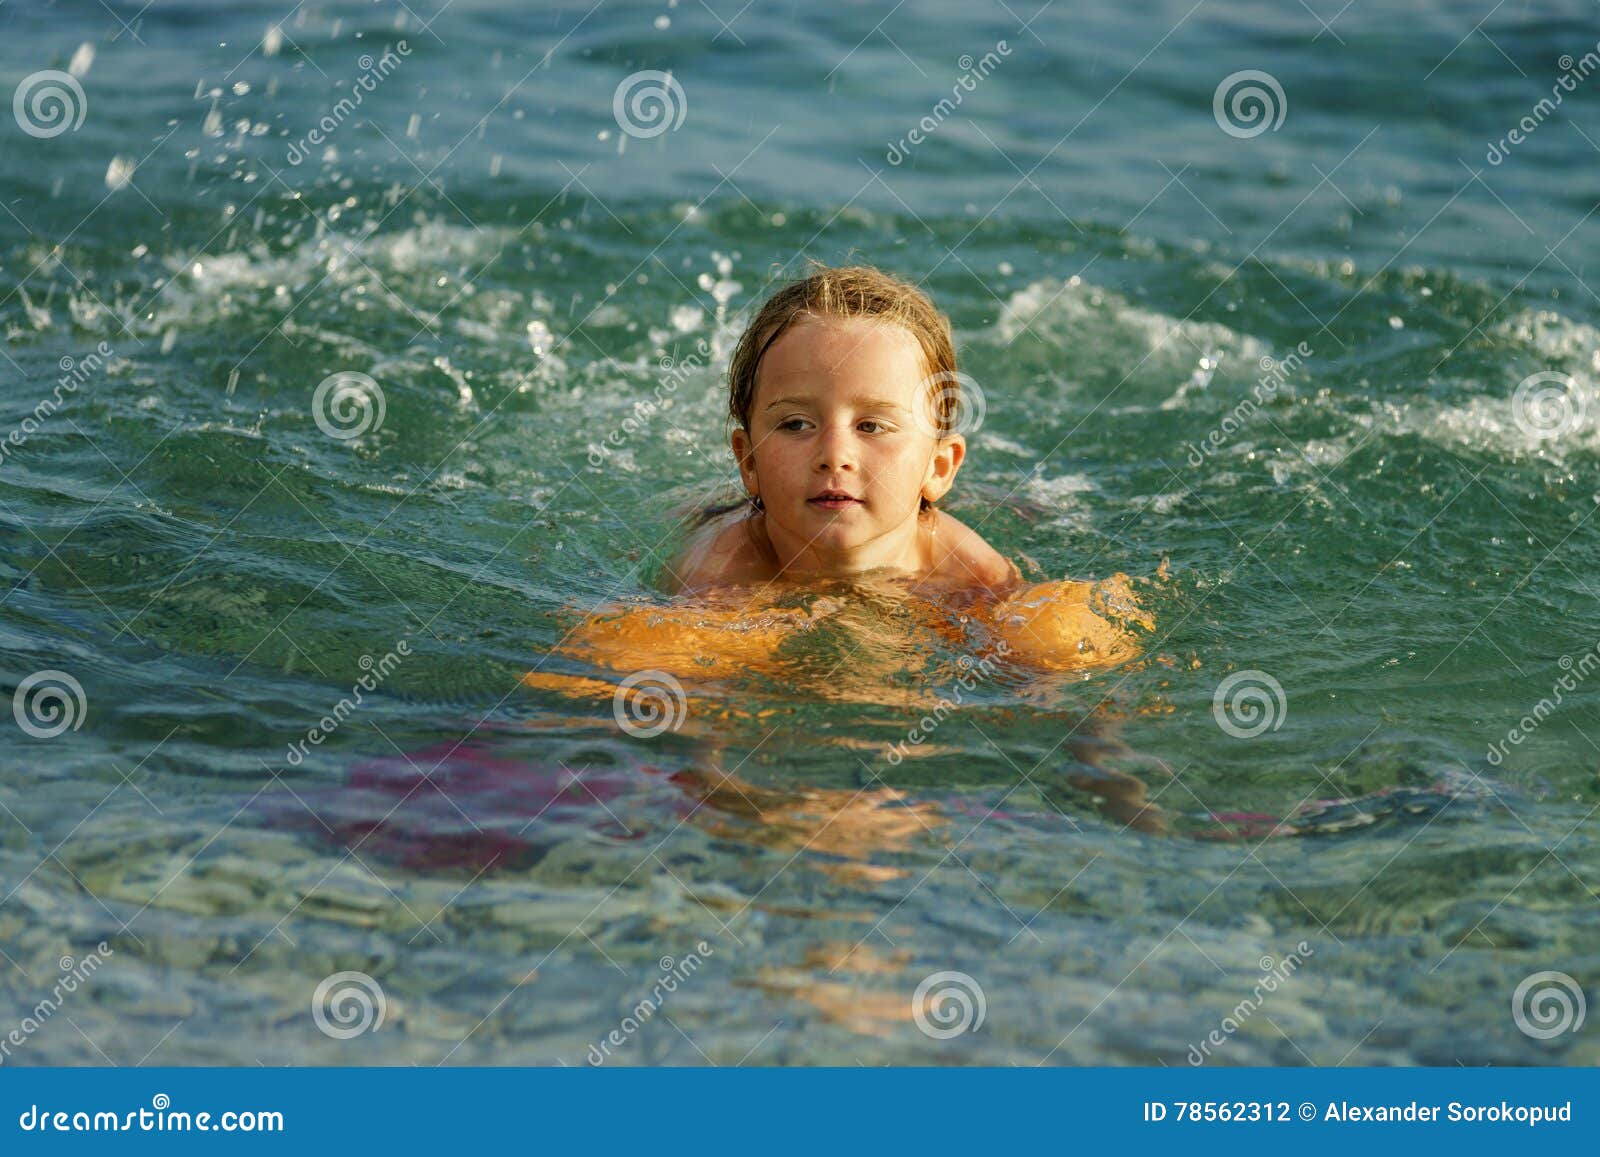 Купаюсь в 10 лет. Девочка купается в море. Купание девочек на море. Дети купаются в море. Девушка плавает в море.